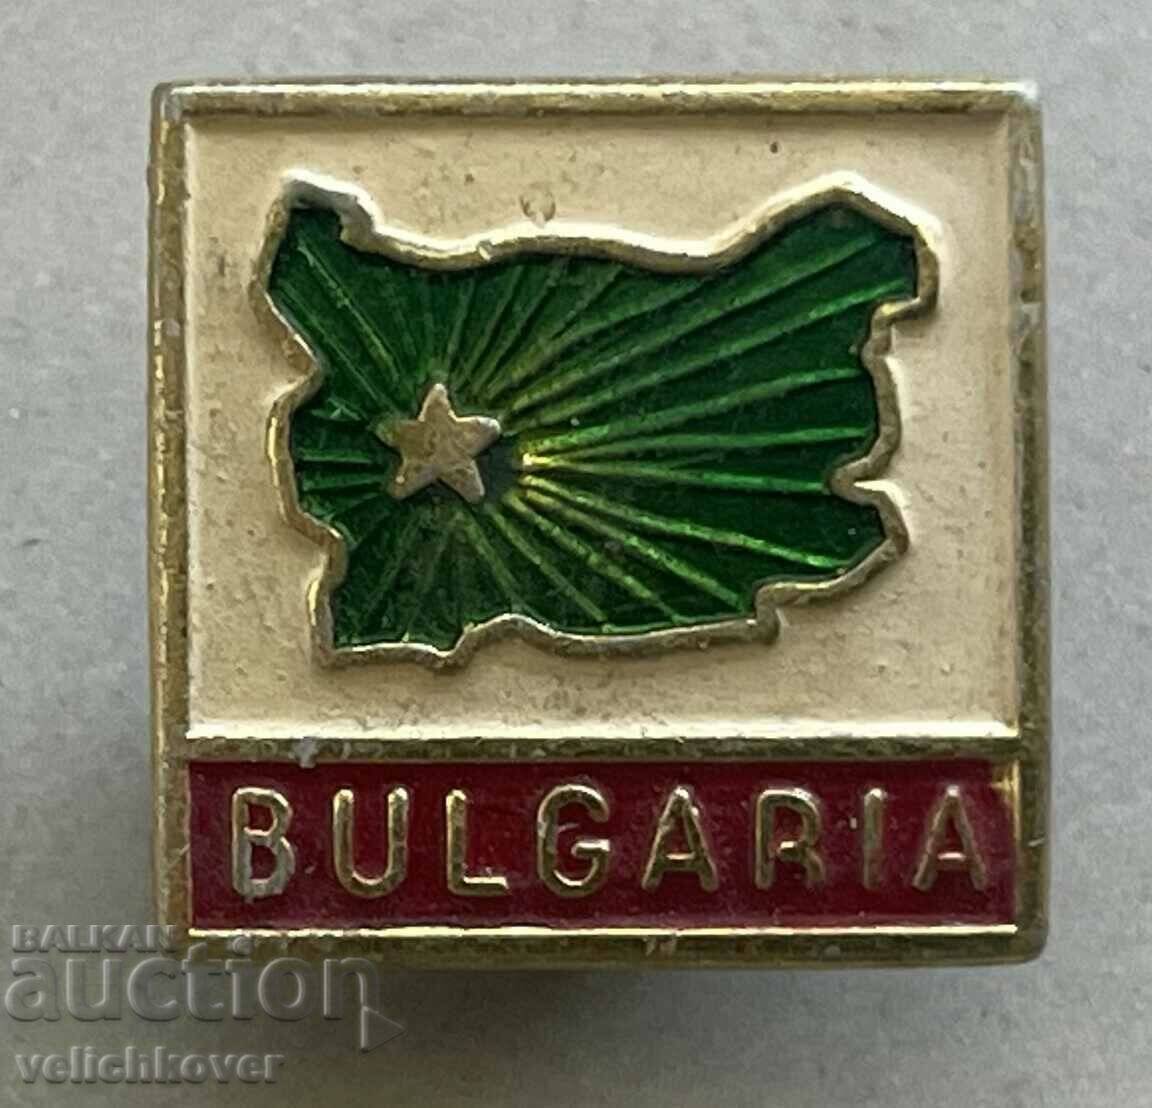 35290 България знак туристически за чужденци